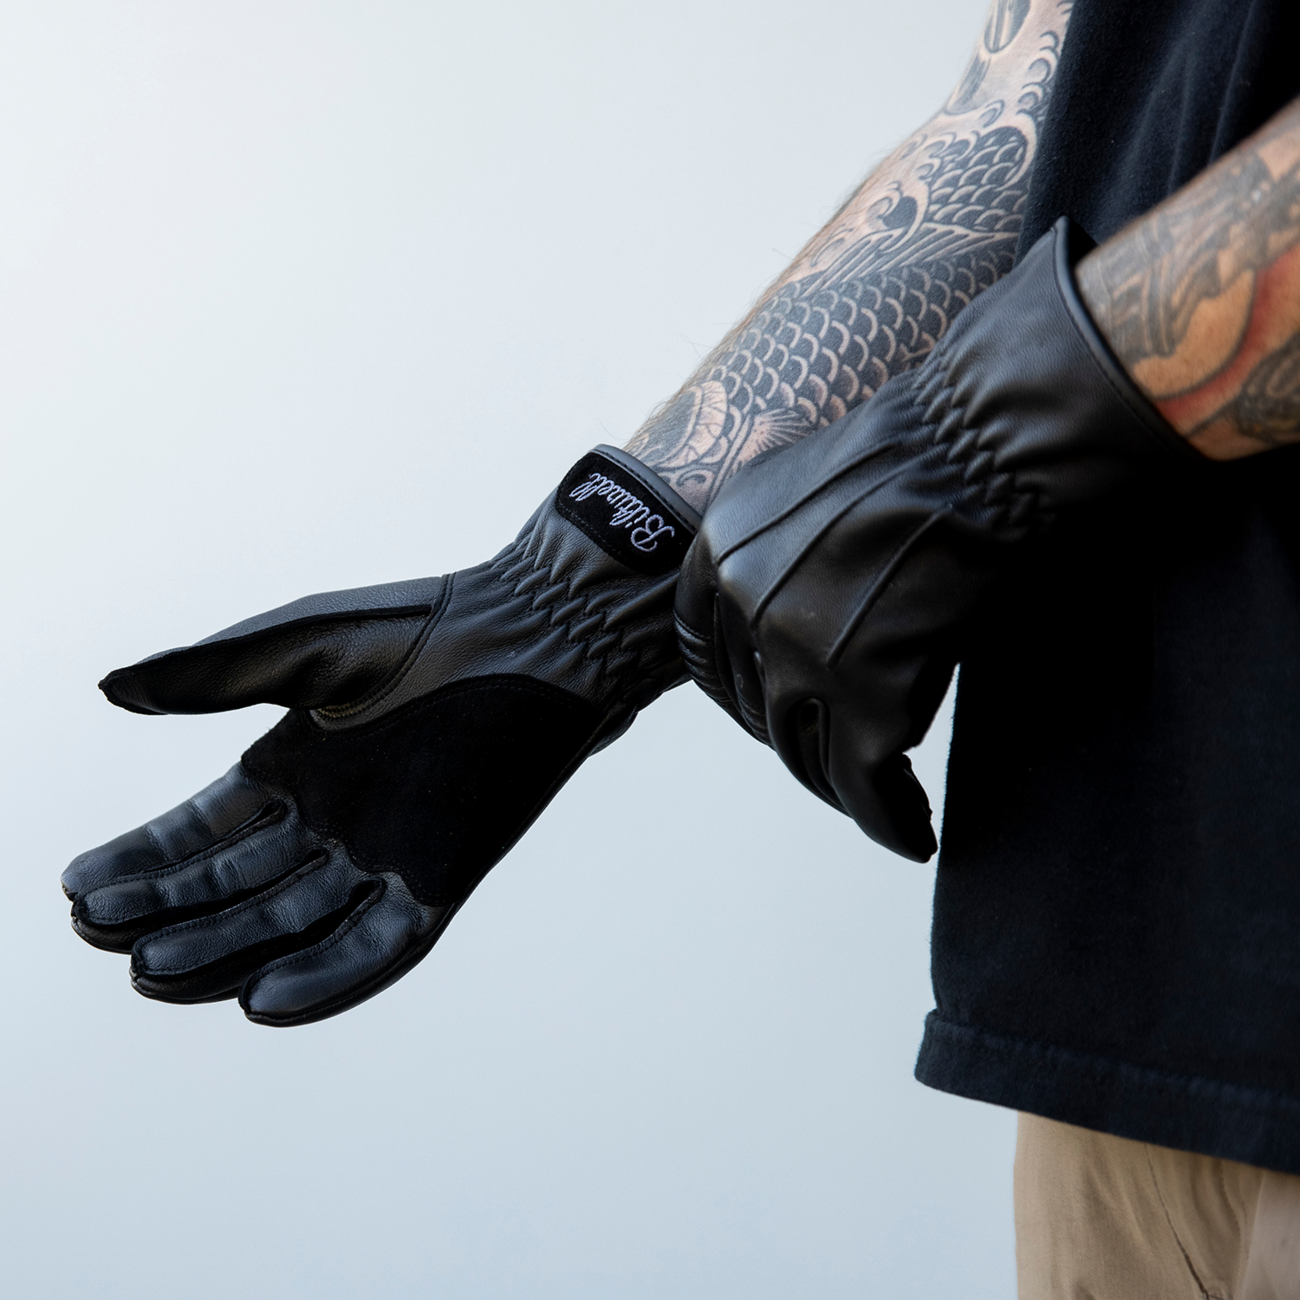 BILTWELL Work 2.0 Gloves - Black - Small 1510-0101-002